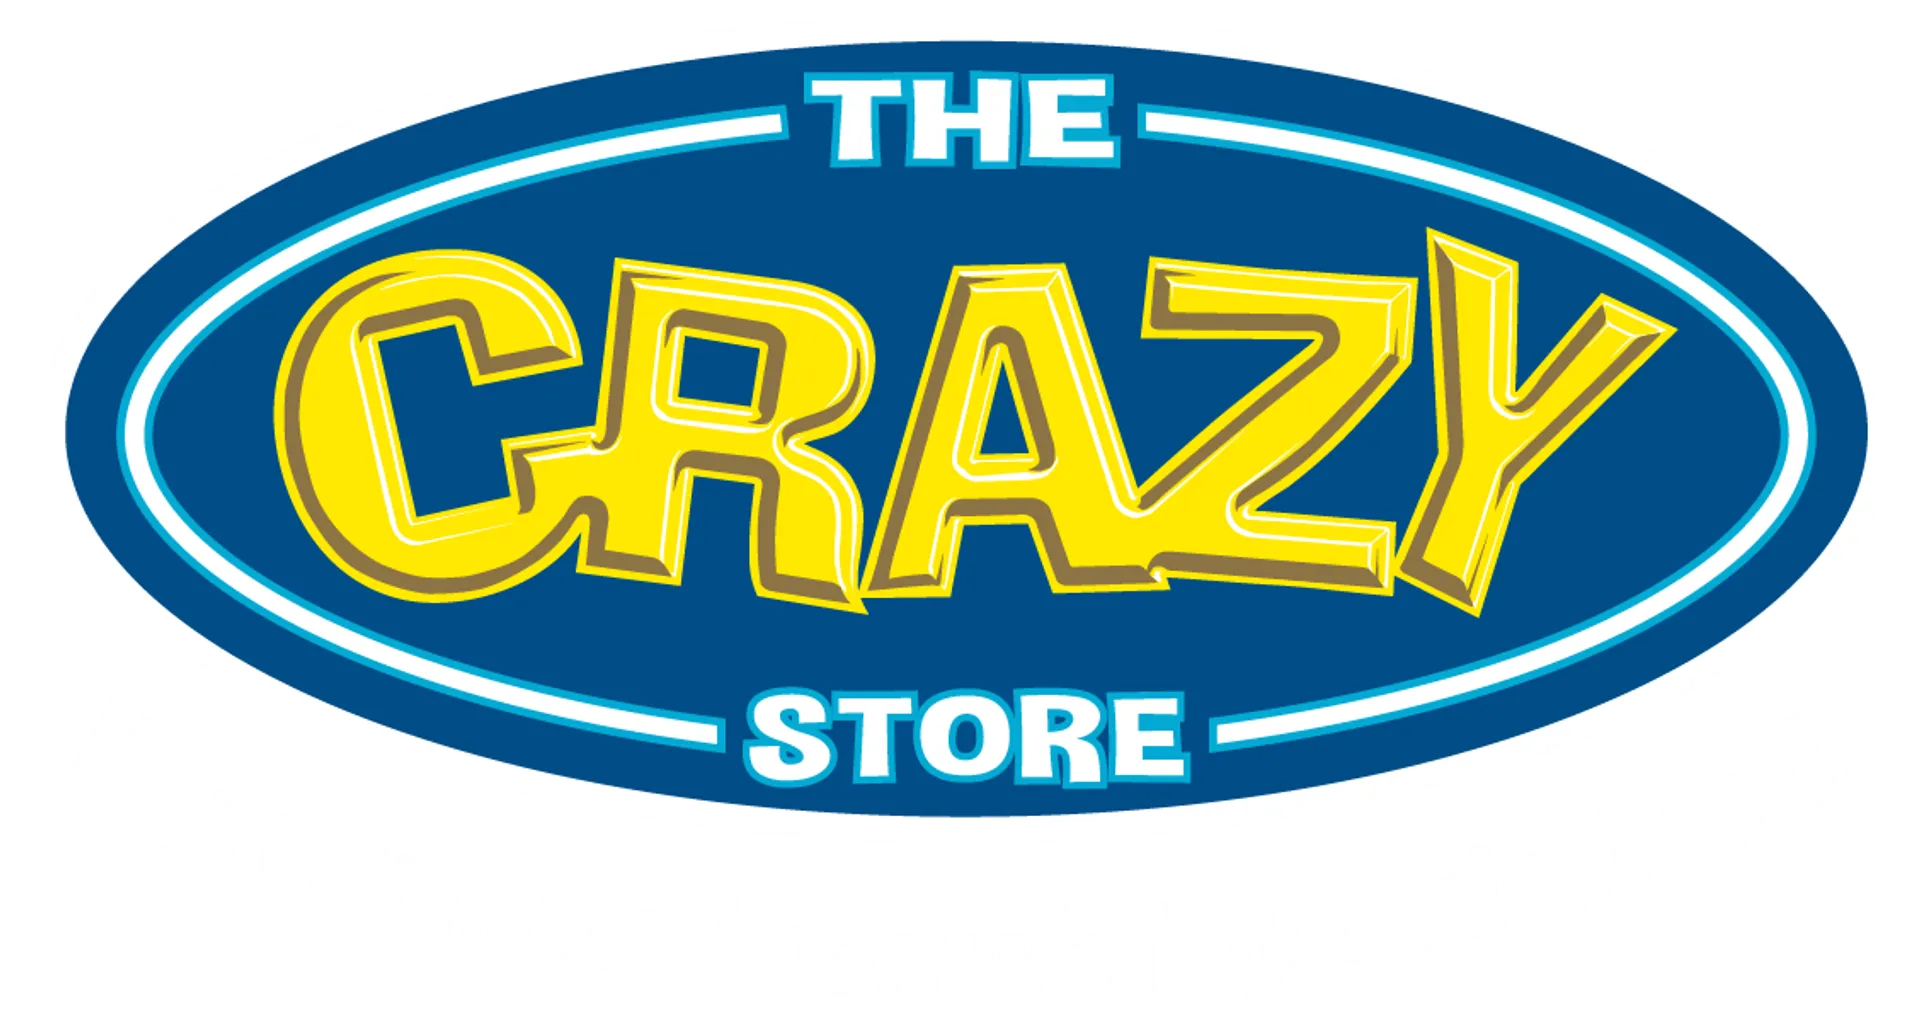 THE CRAZY STORE logo